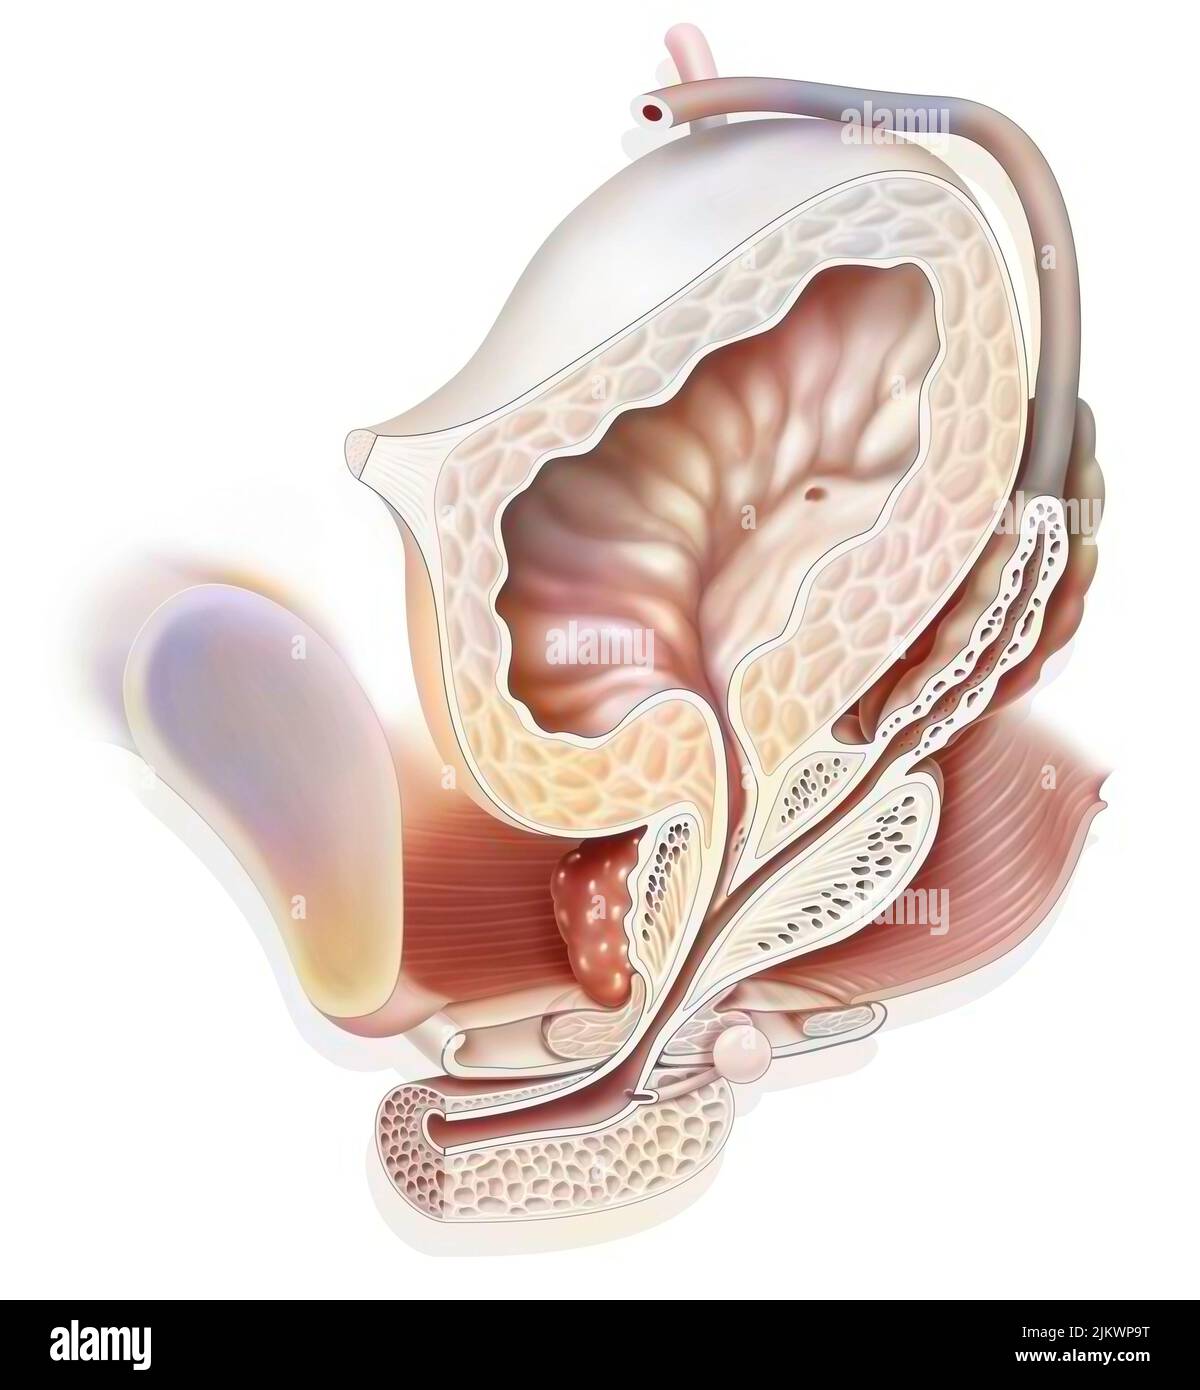 Anatomia del sistema urogenitale maschile con uretere, vescica. Foto Stock